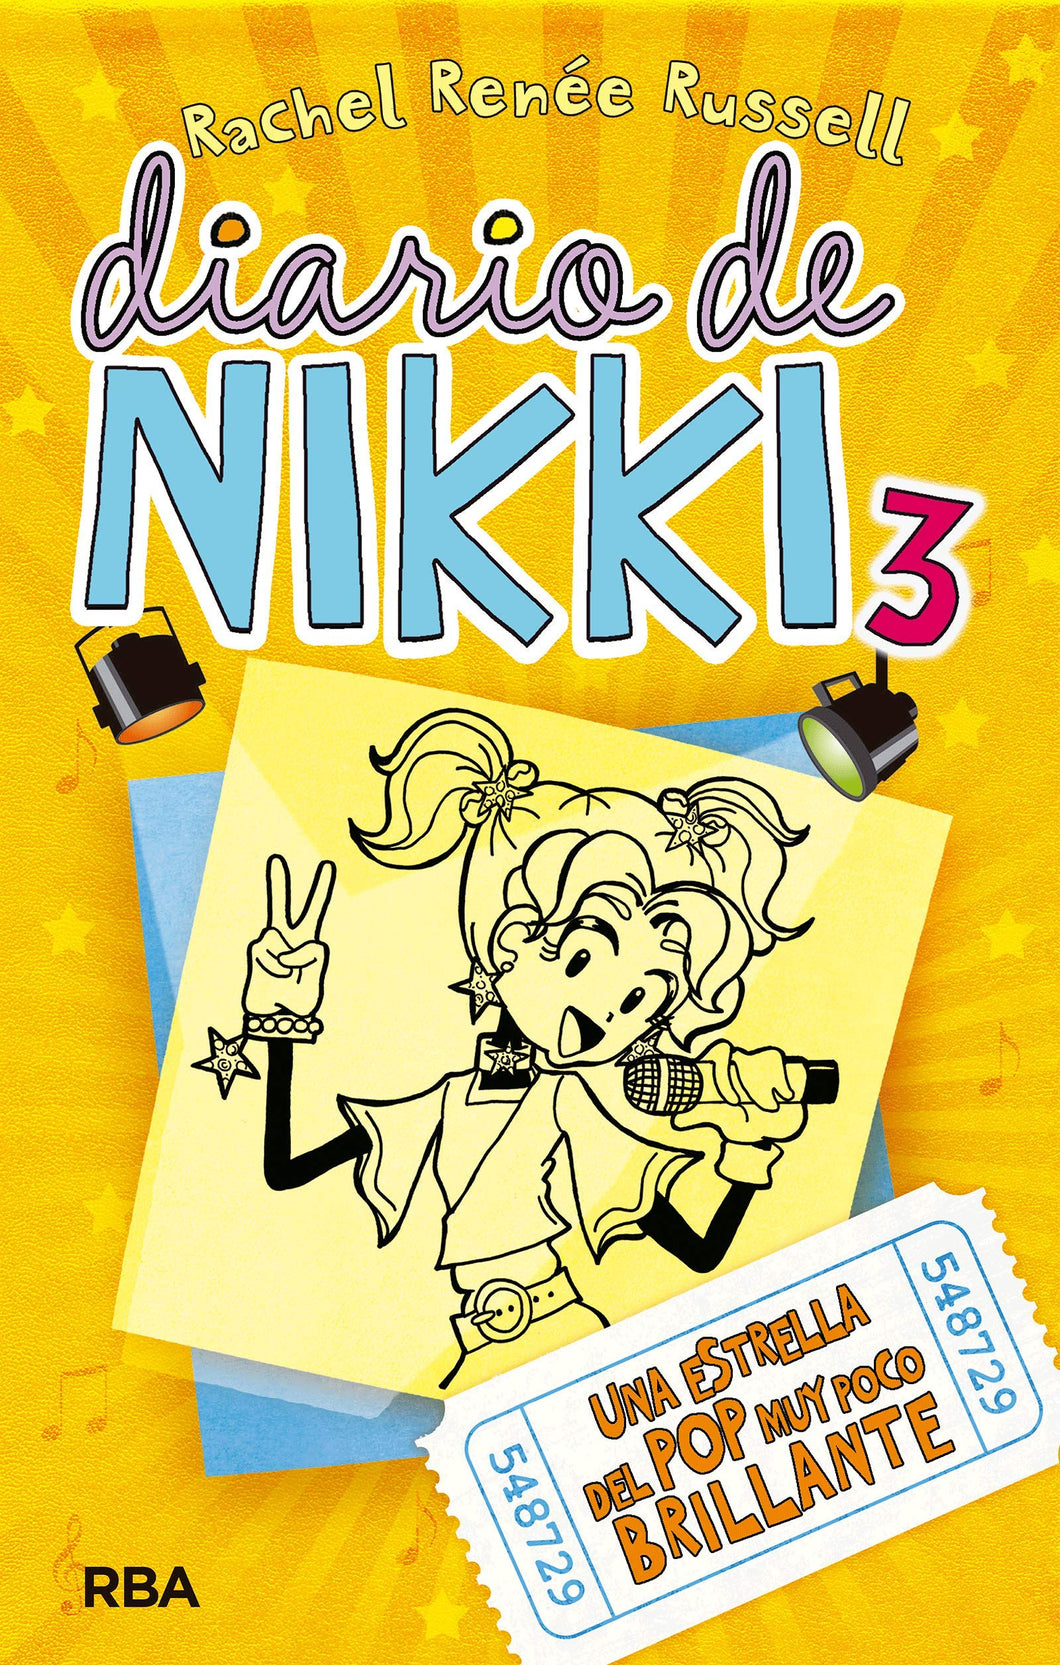 Nikki's Diary 3: c-85 A Faint Little Pop Star - Rachel Renée Russell (Hardcover, Second Hand)